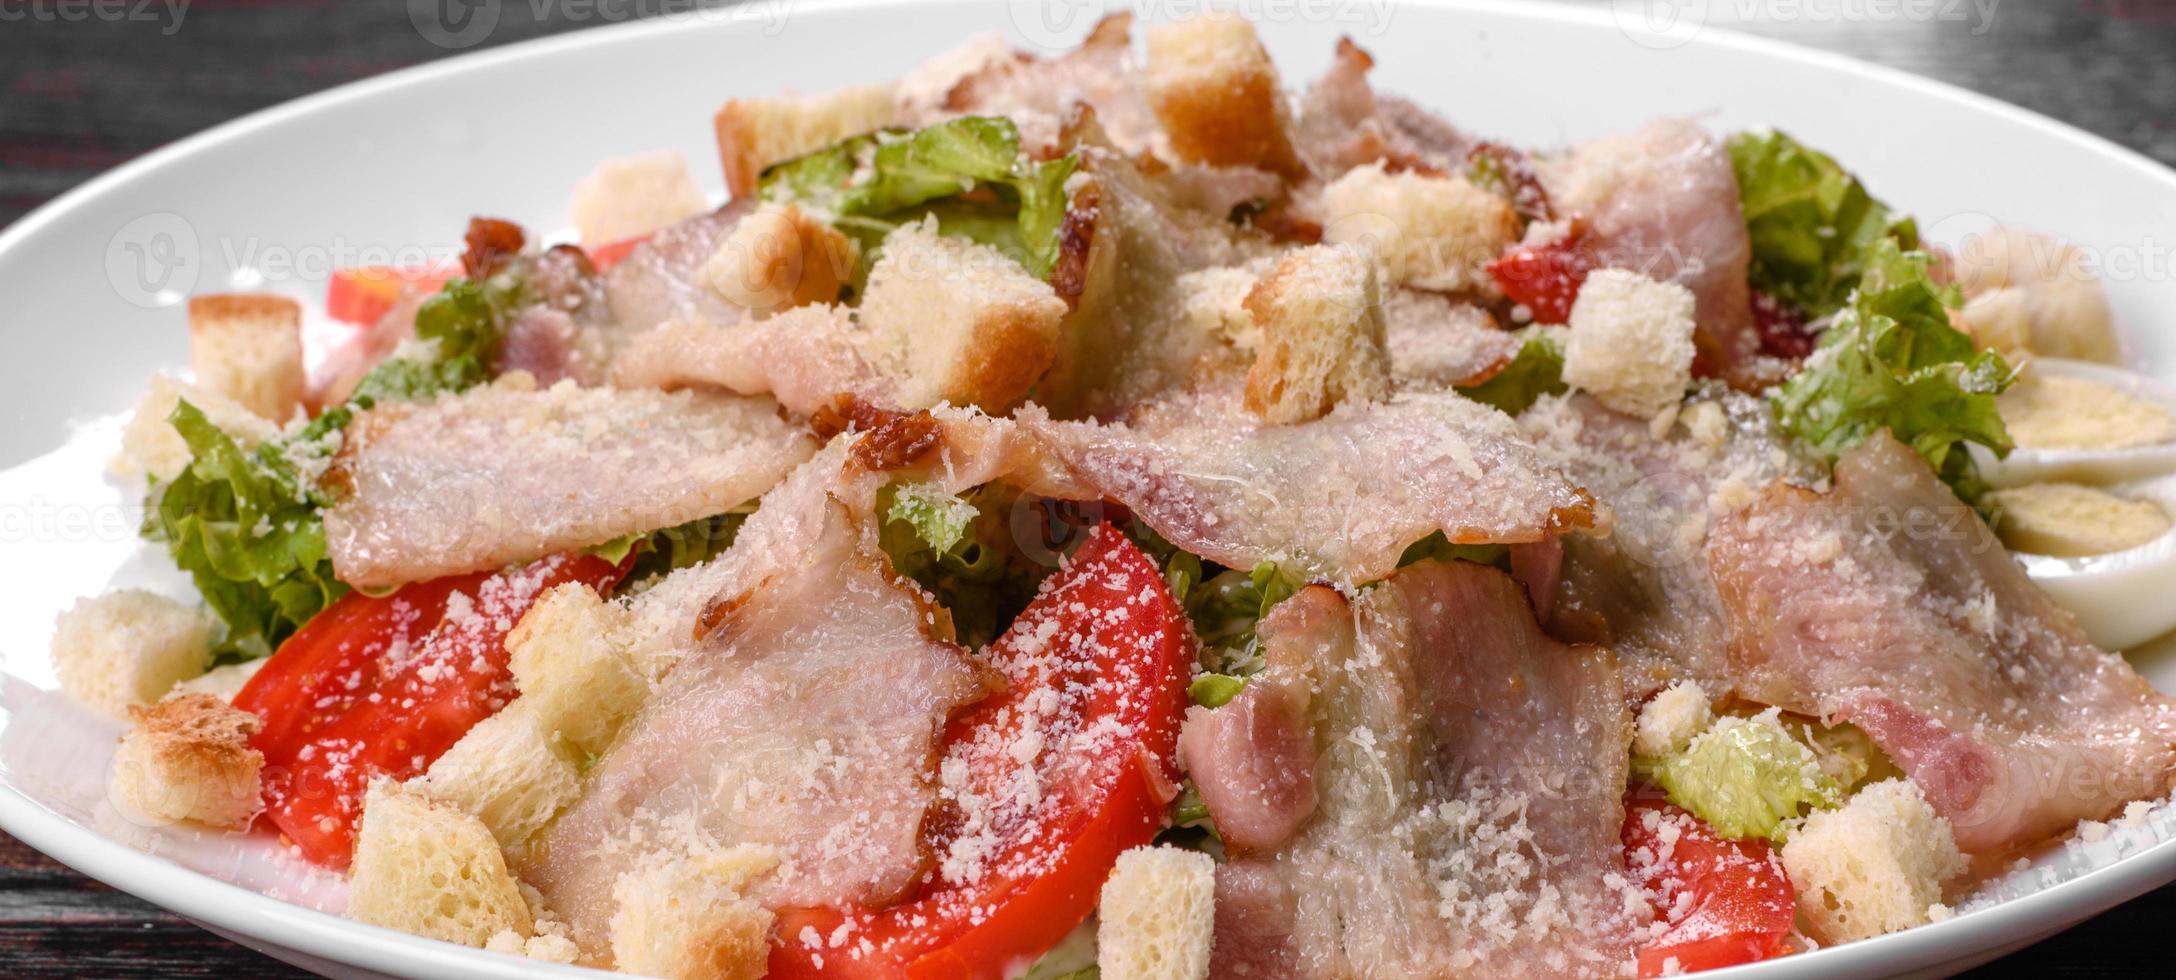 deliciosa salada fresca com bacon e tomate com especiarias e verduras foto